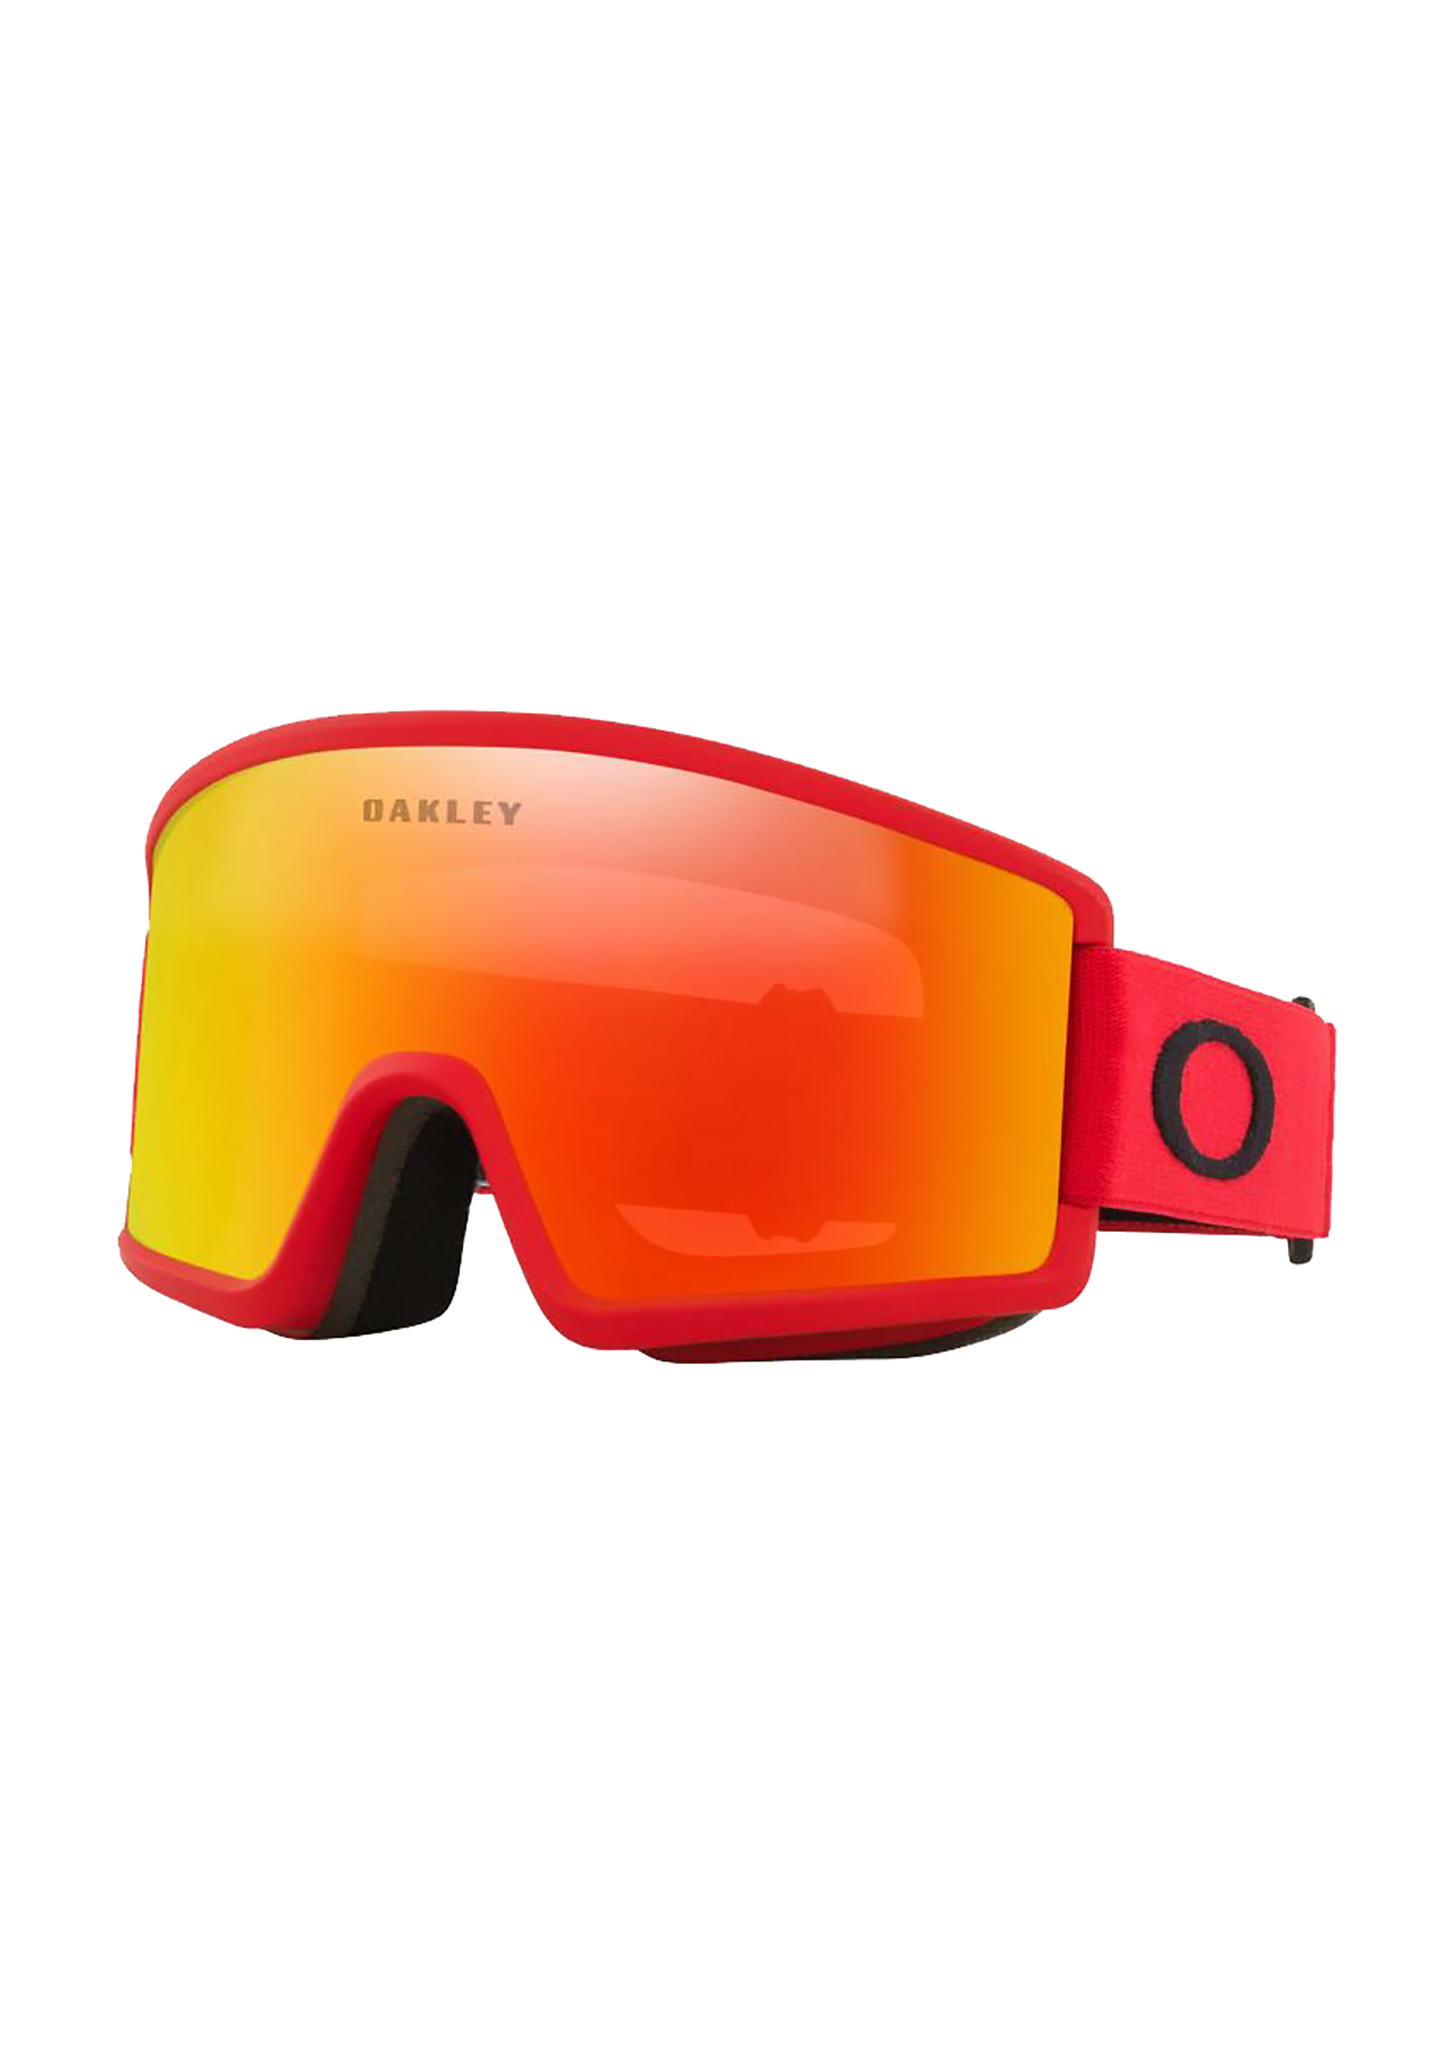 Oakley Target Line L Snowboardbrillen rotlinie/feuer-iridium One Size